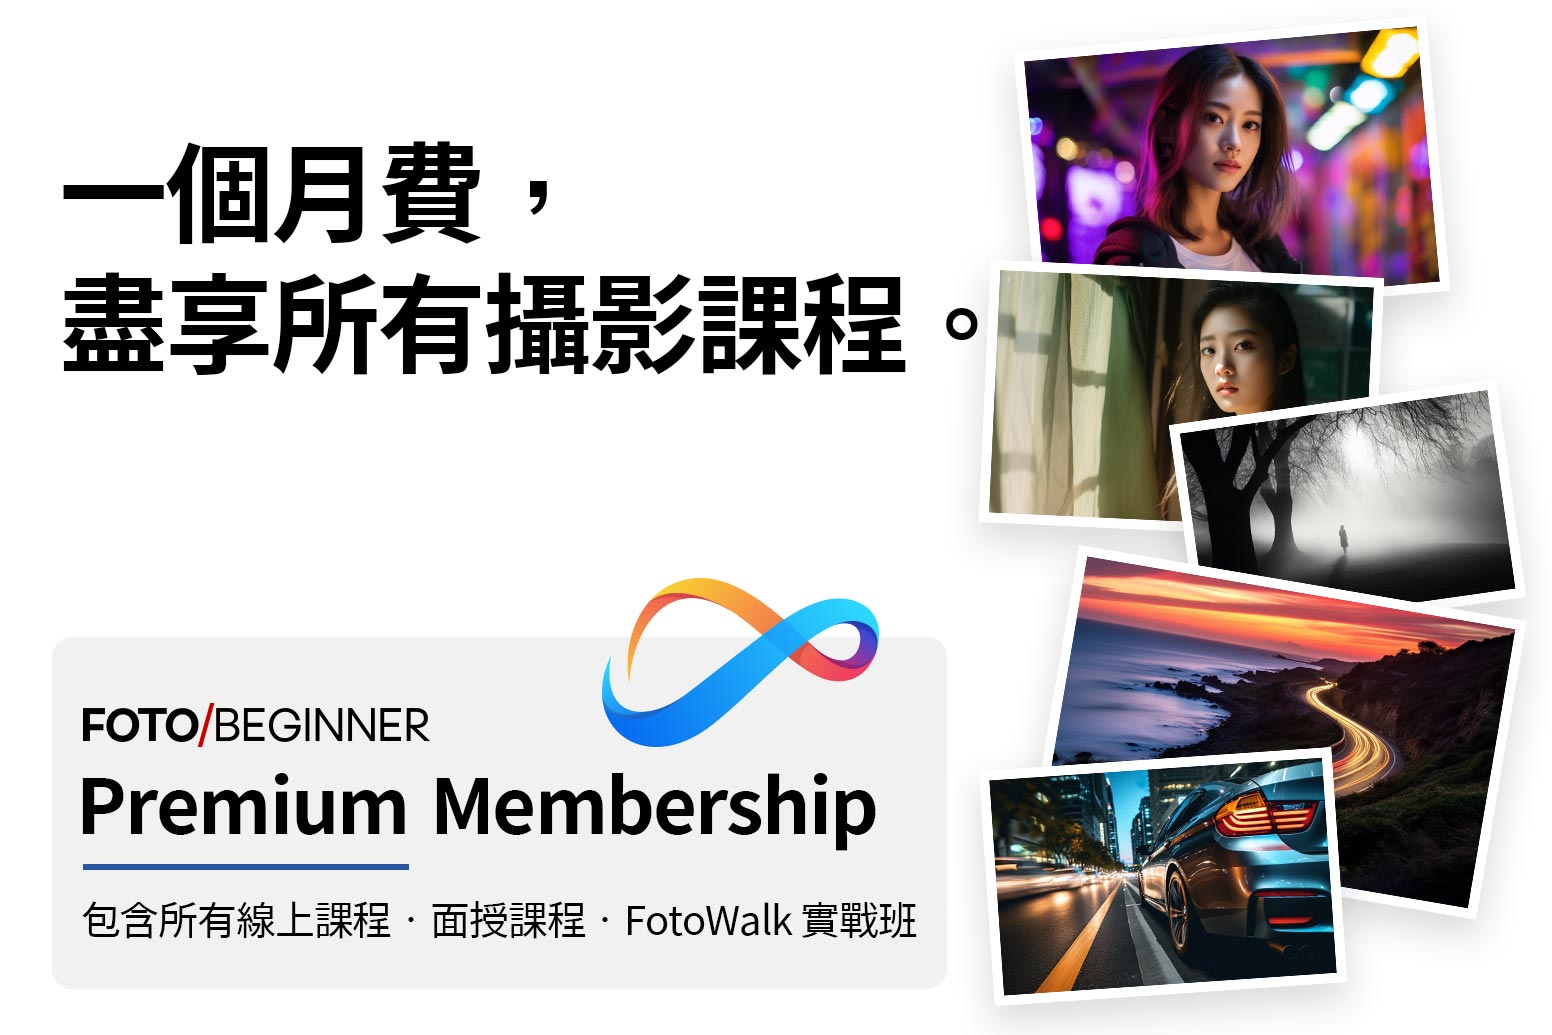 Fotobeginner Premium Membership